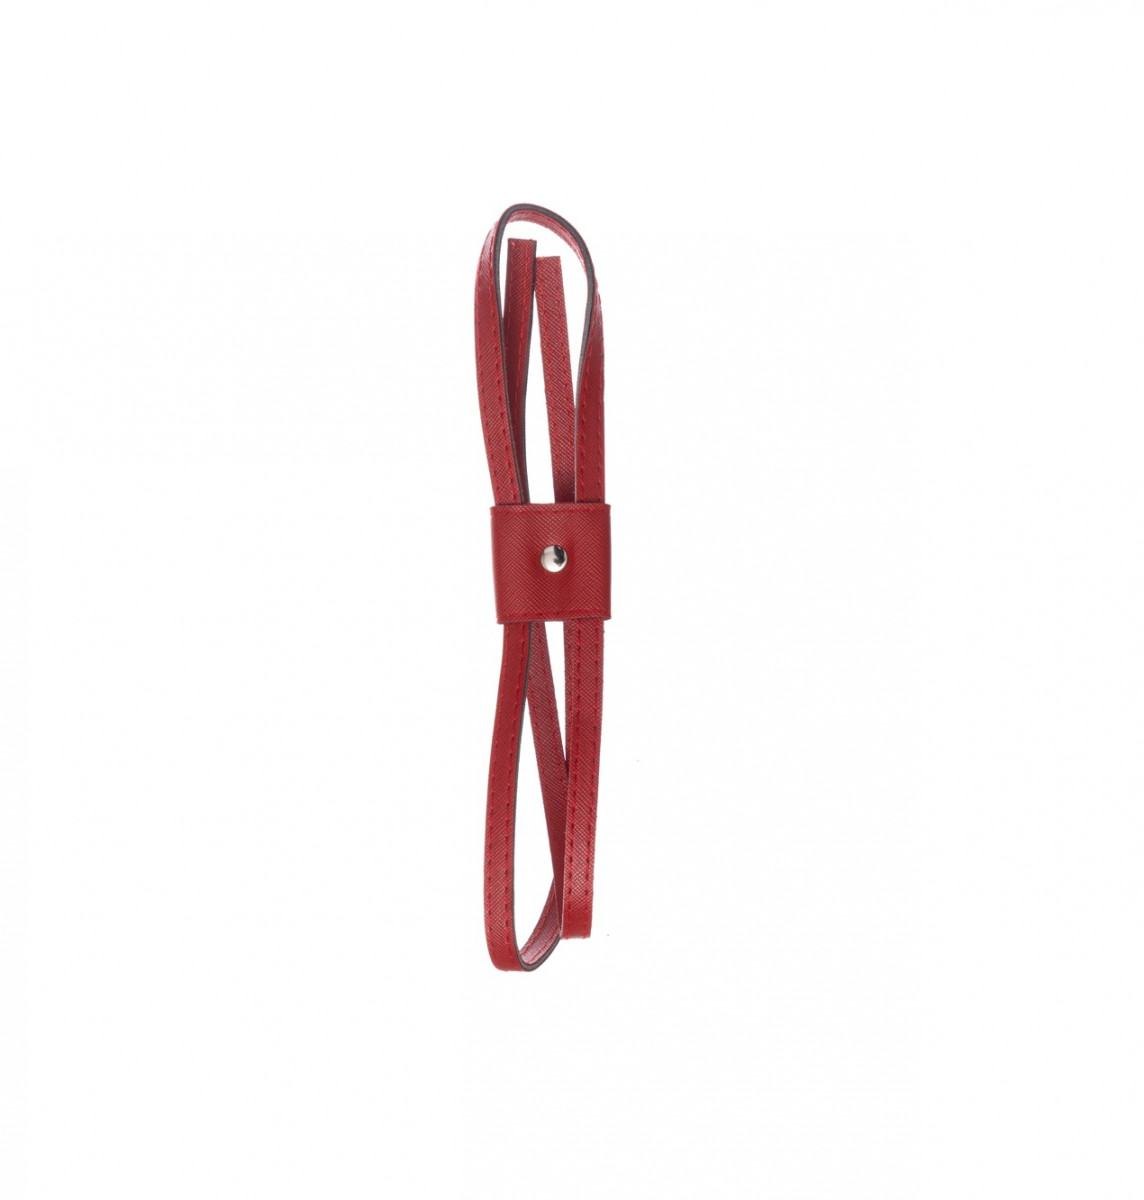 Затяжка для рюкзака 99 см, цвет Красный, фурнитура серебро, ТрК 84008